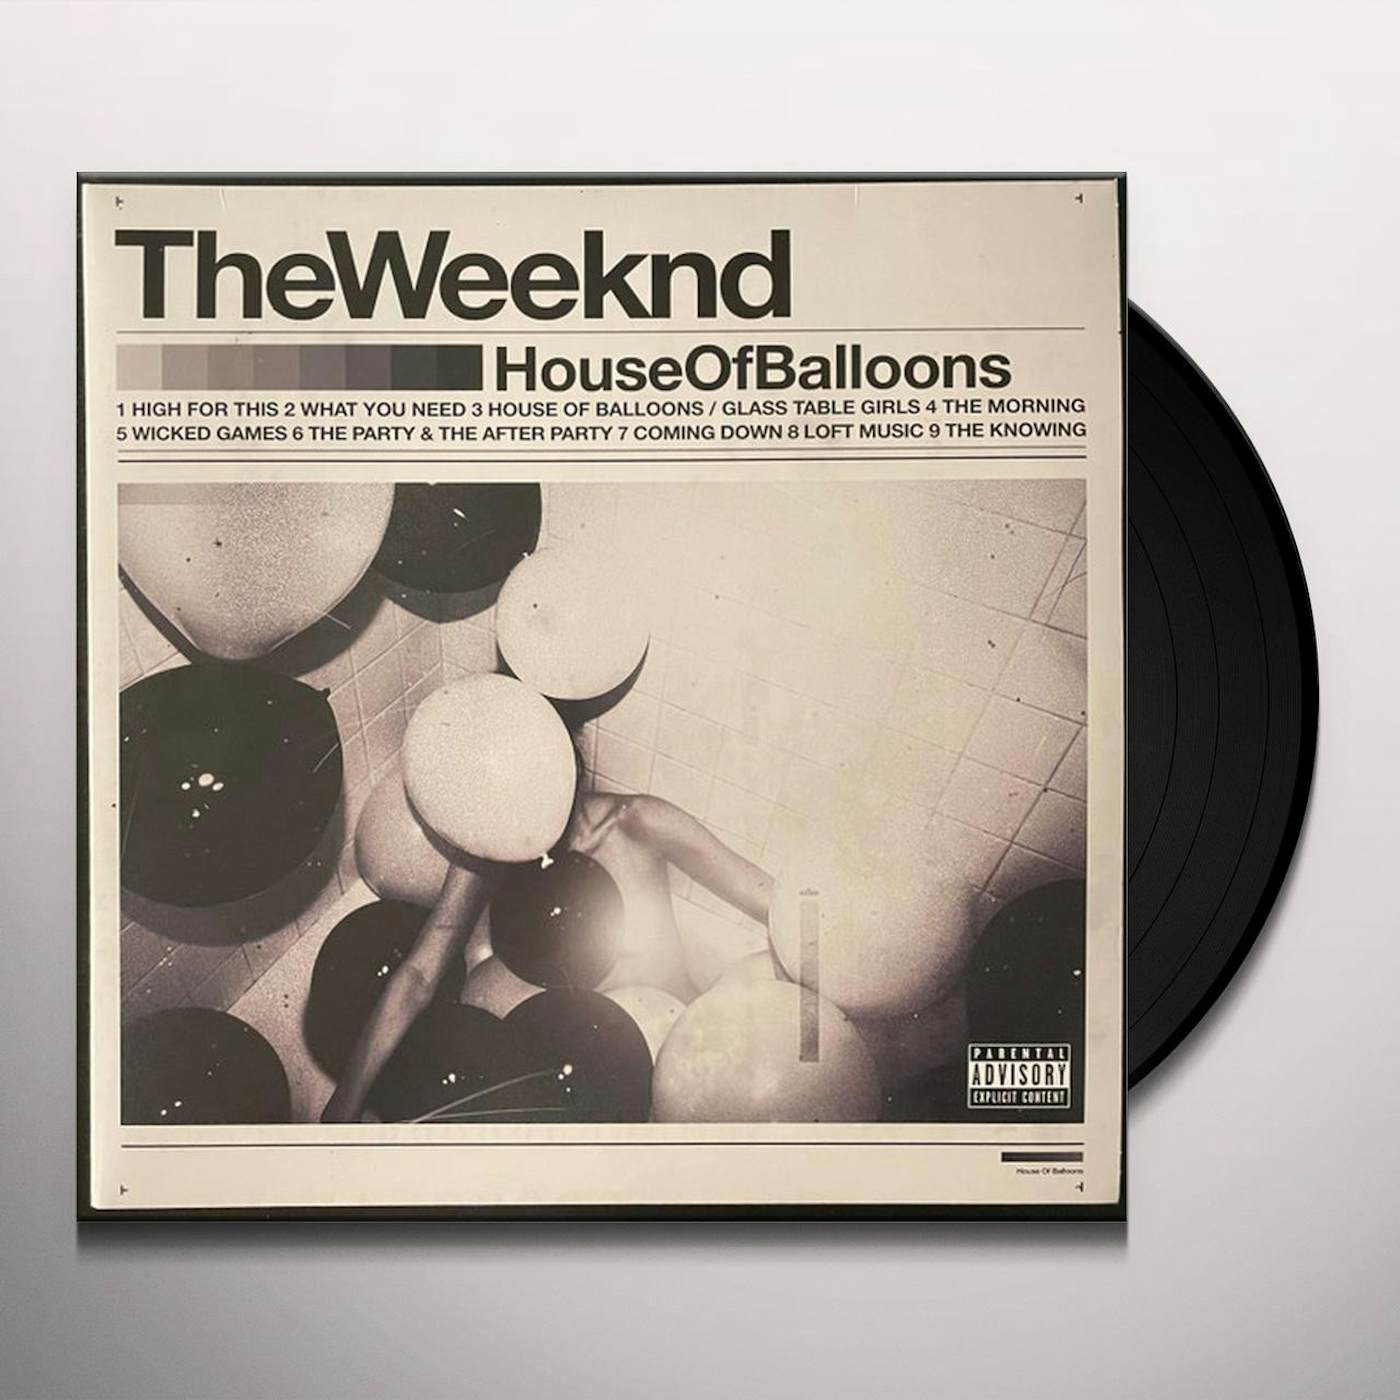 The Weeknd: Thursday Vinyl LP: CDs & Vinyl 